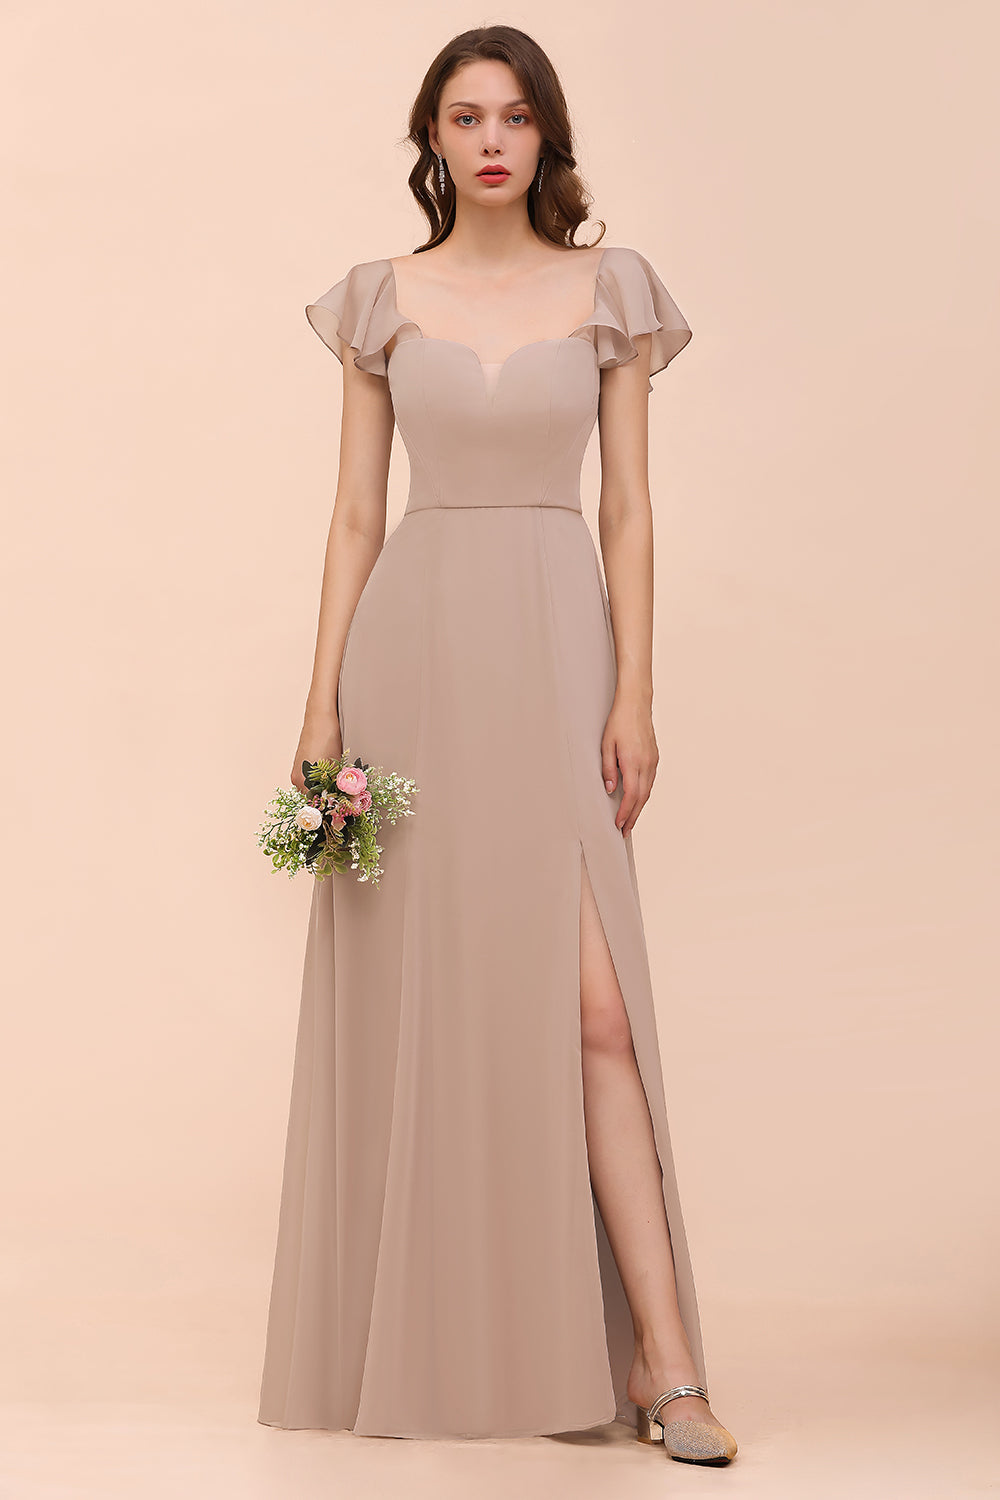 Bestellen Sie Champagne Brautjungfernkleider Lang online bei babyonlinedress.de. Günstiges Kleid Für Brautjungfern maß geschneidert bekommen.